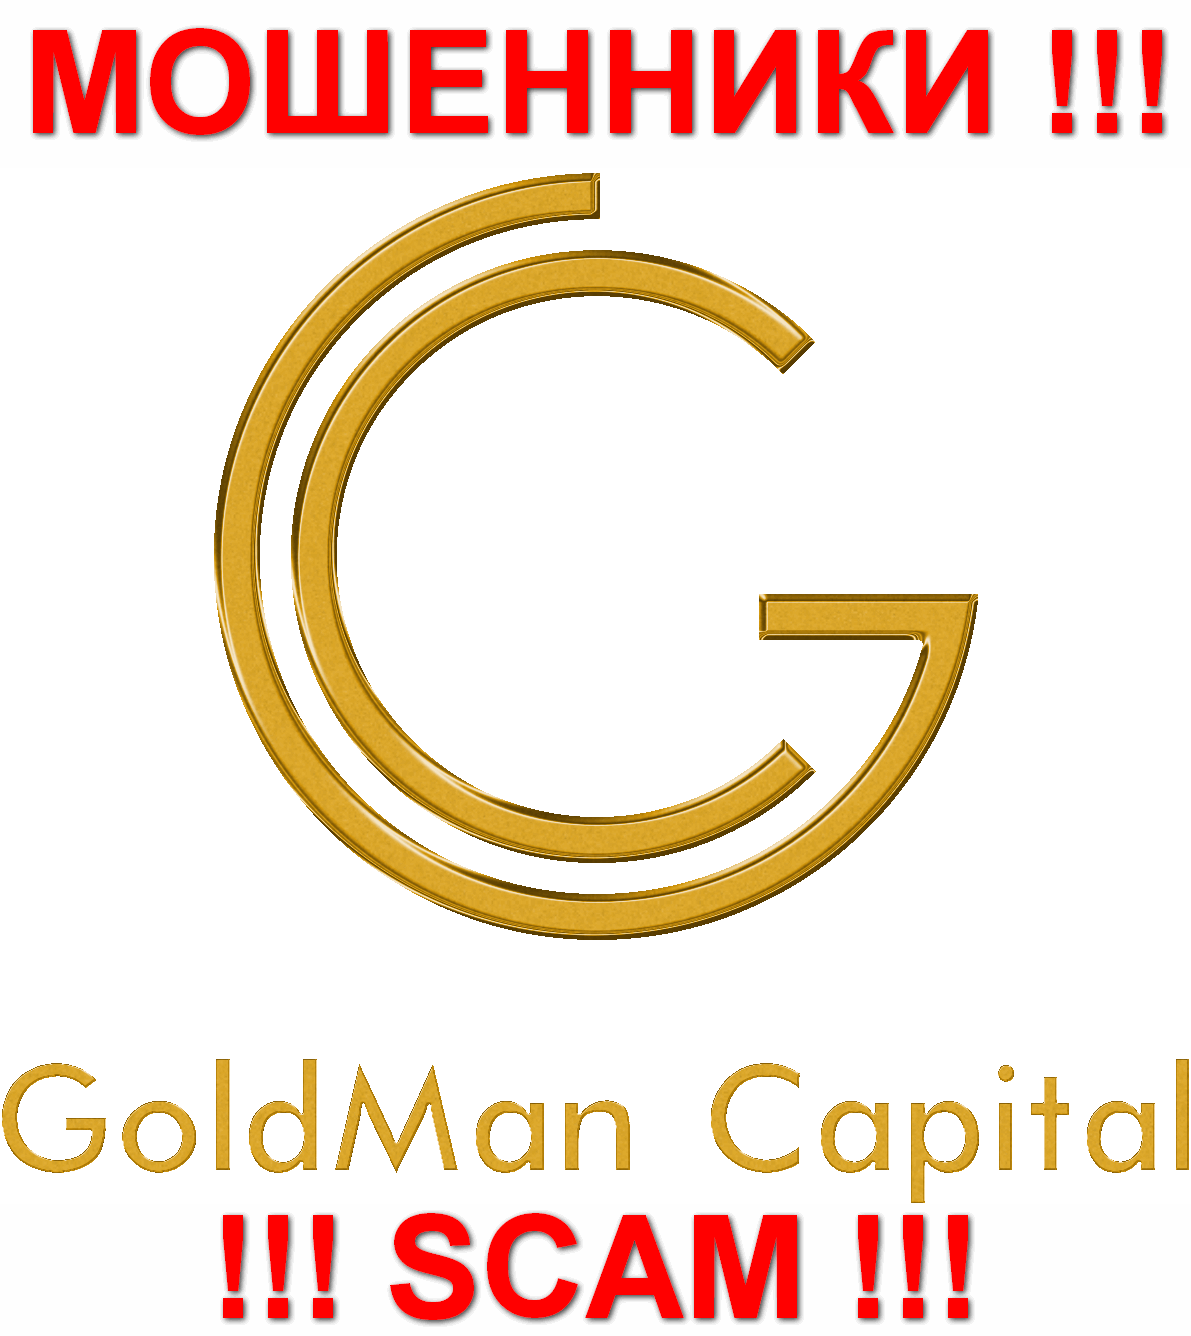 GoldmanCapital - МОШЕННИКИ !!! СКАМ !!!